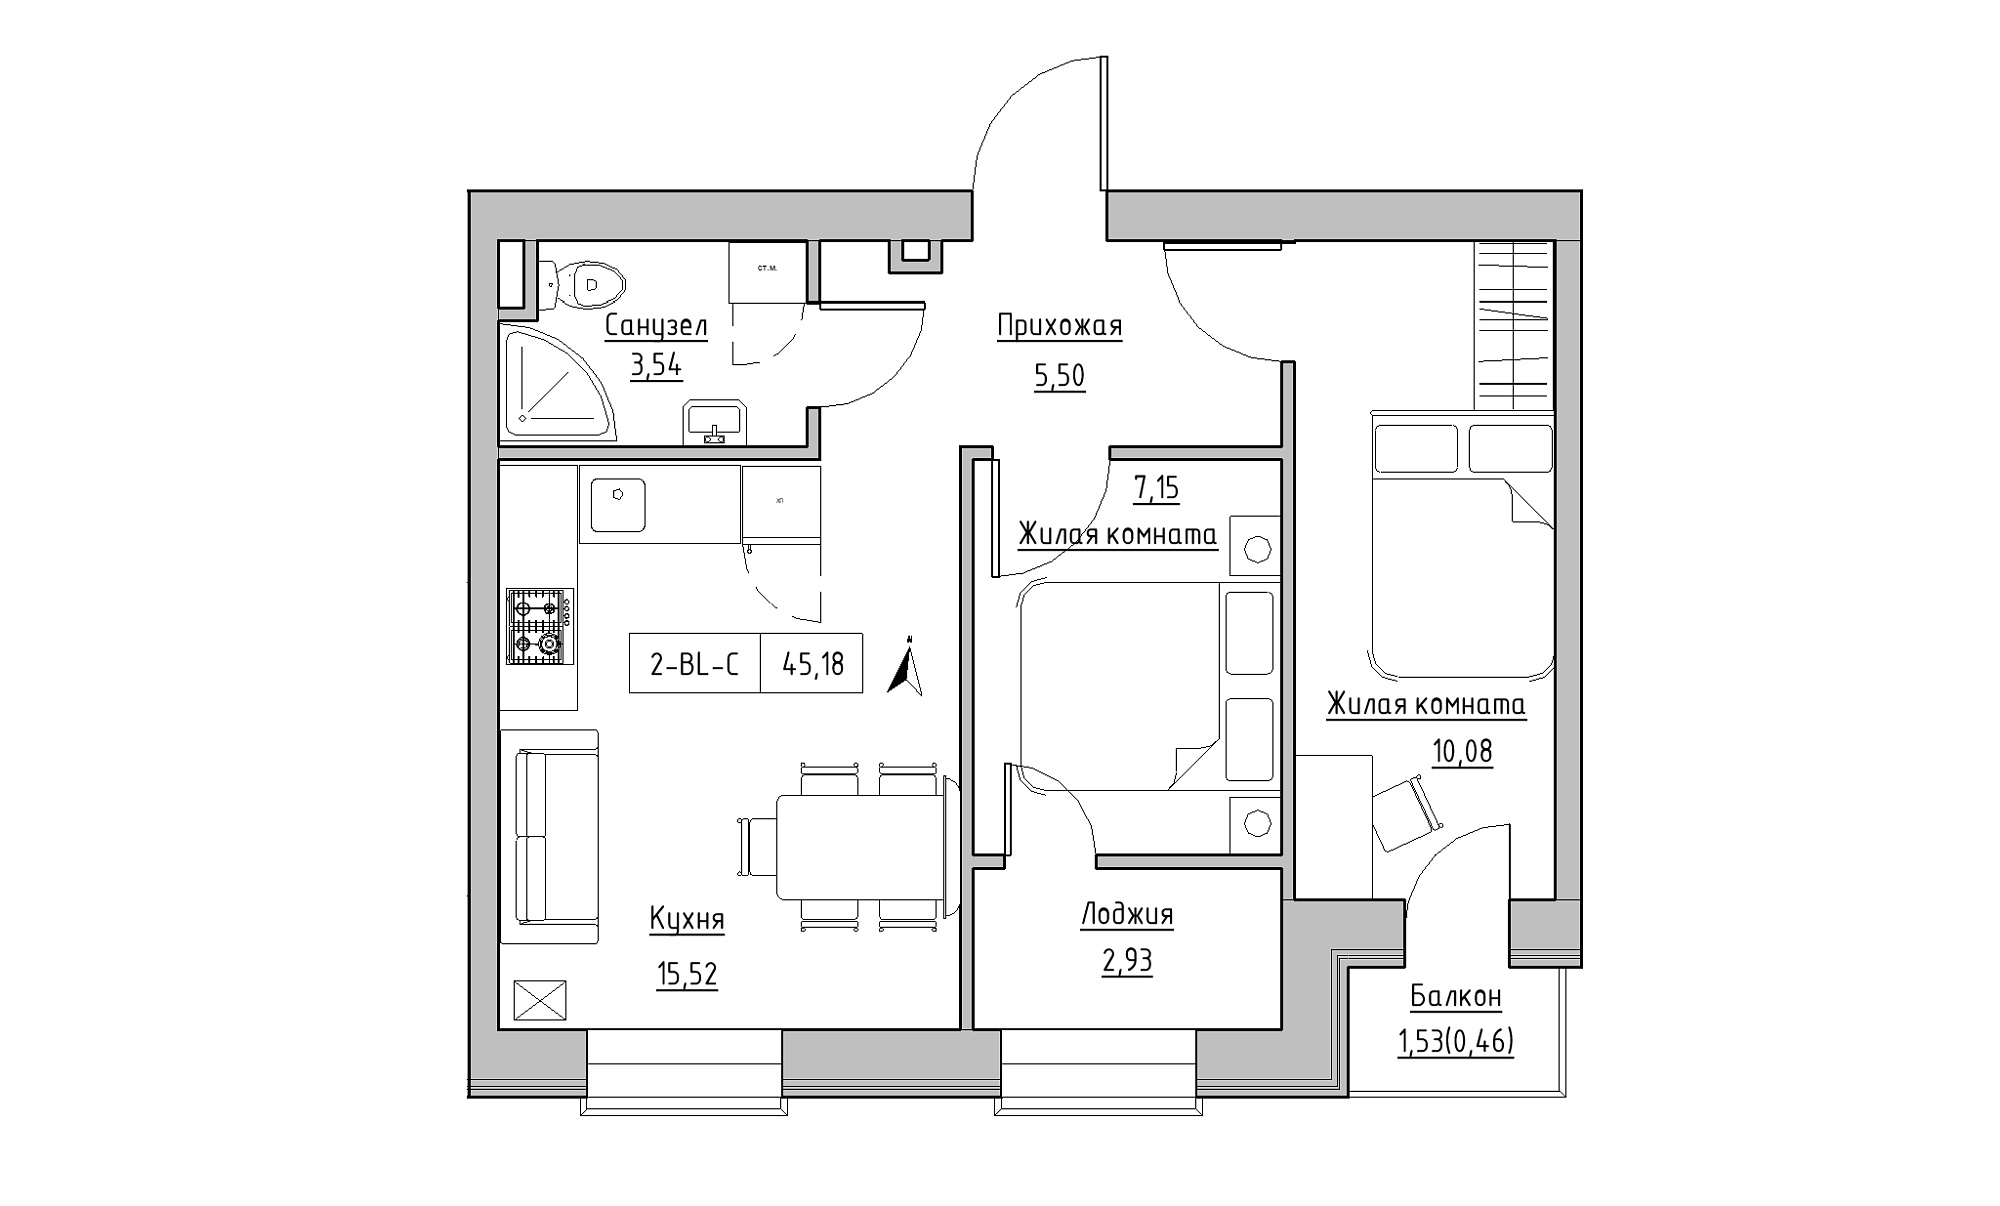 Планування 2-к квартира площею 45.18м2, KS-023-04/0009.